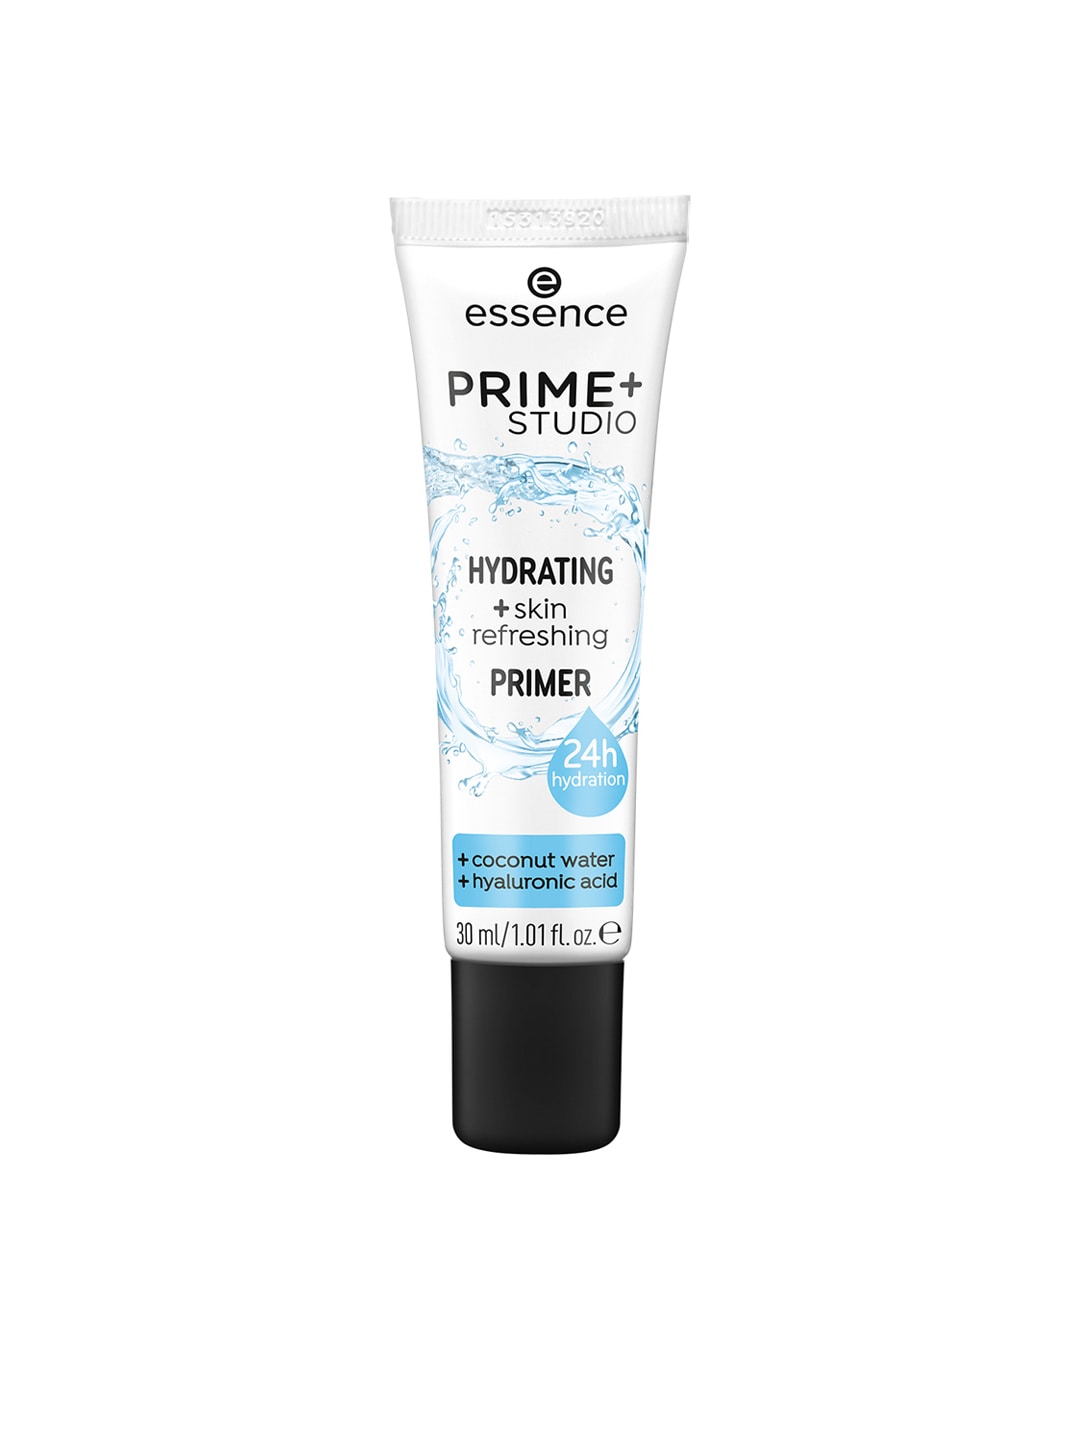 essence PRIME+ STUDIO HYDRATING +skin refreshing Primer Price in India